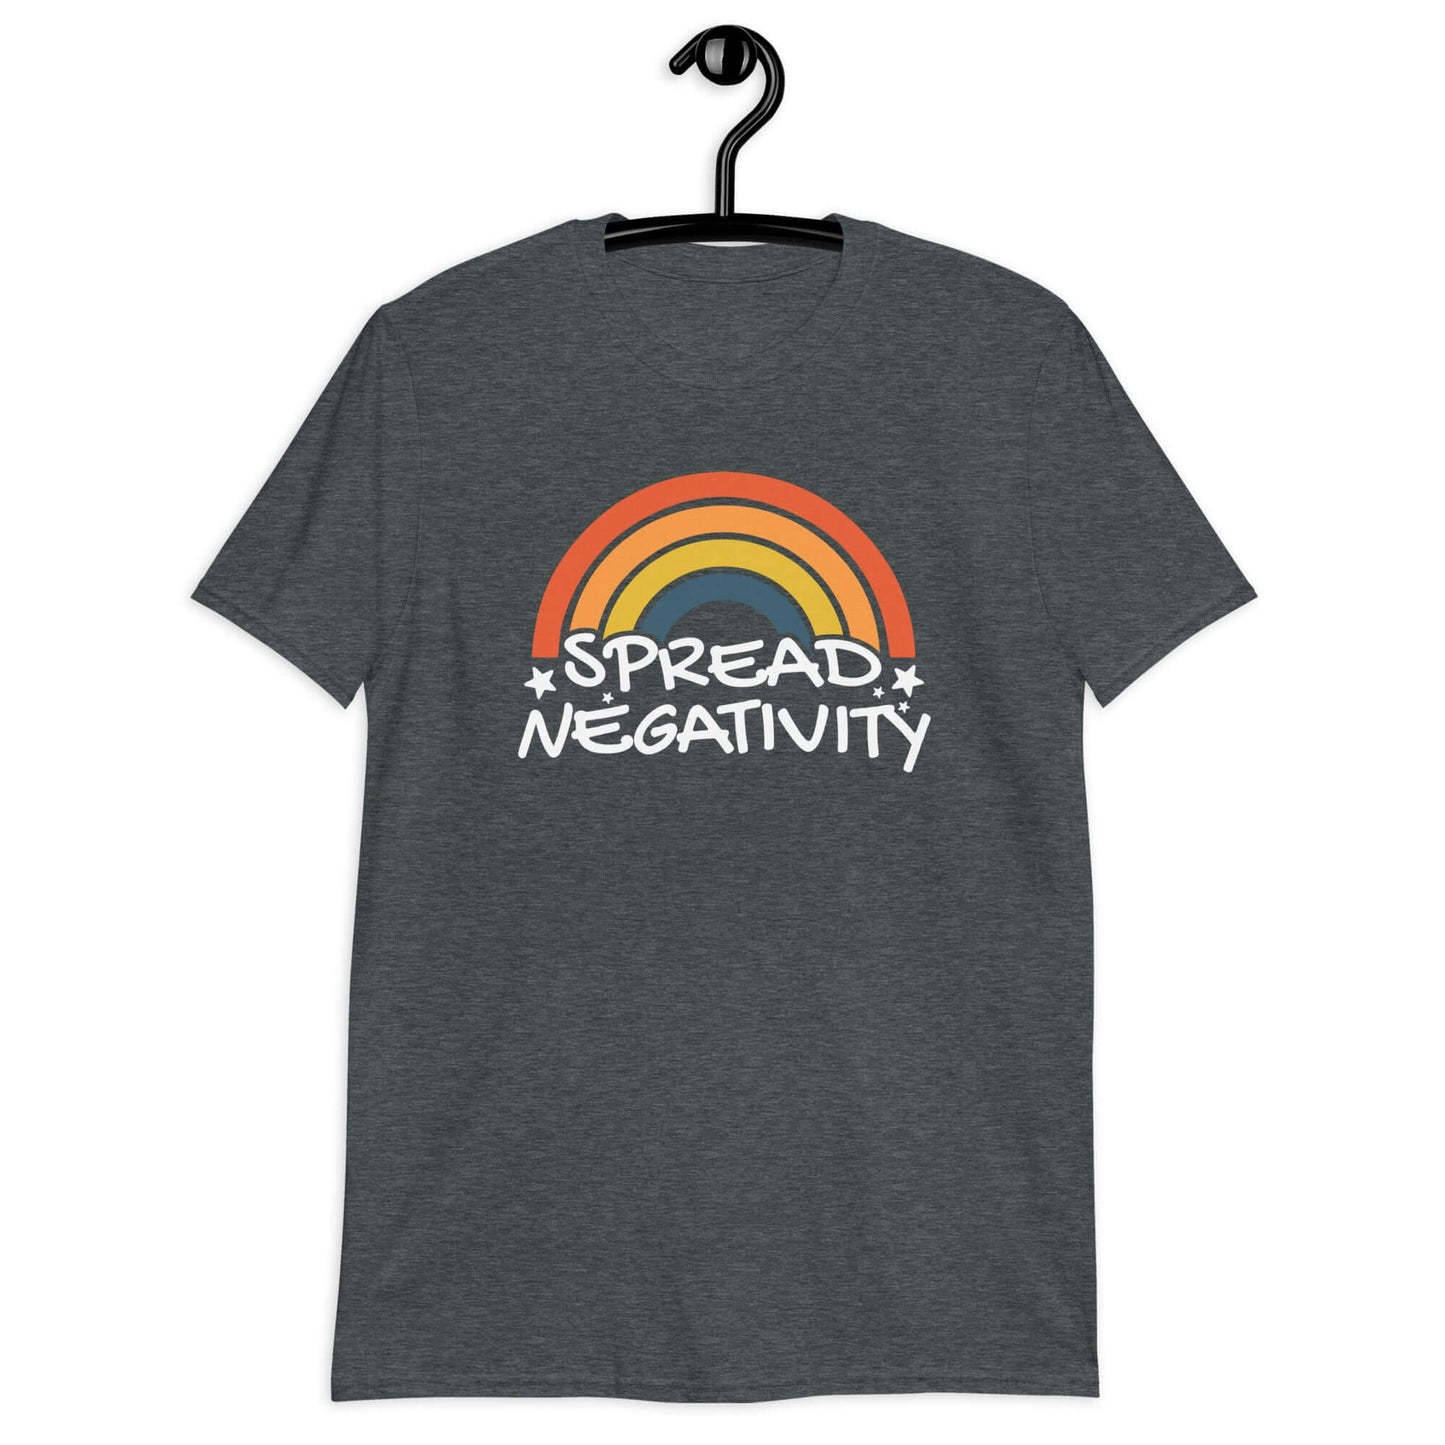 Spread negativity short sleeve t-shirt